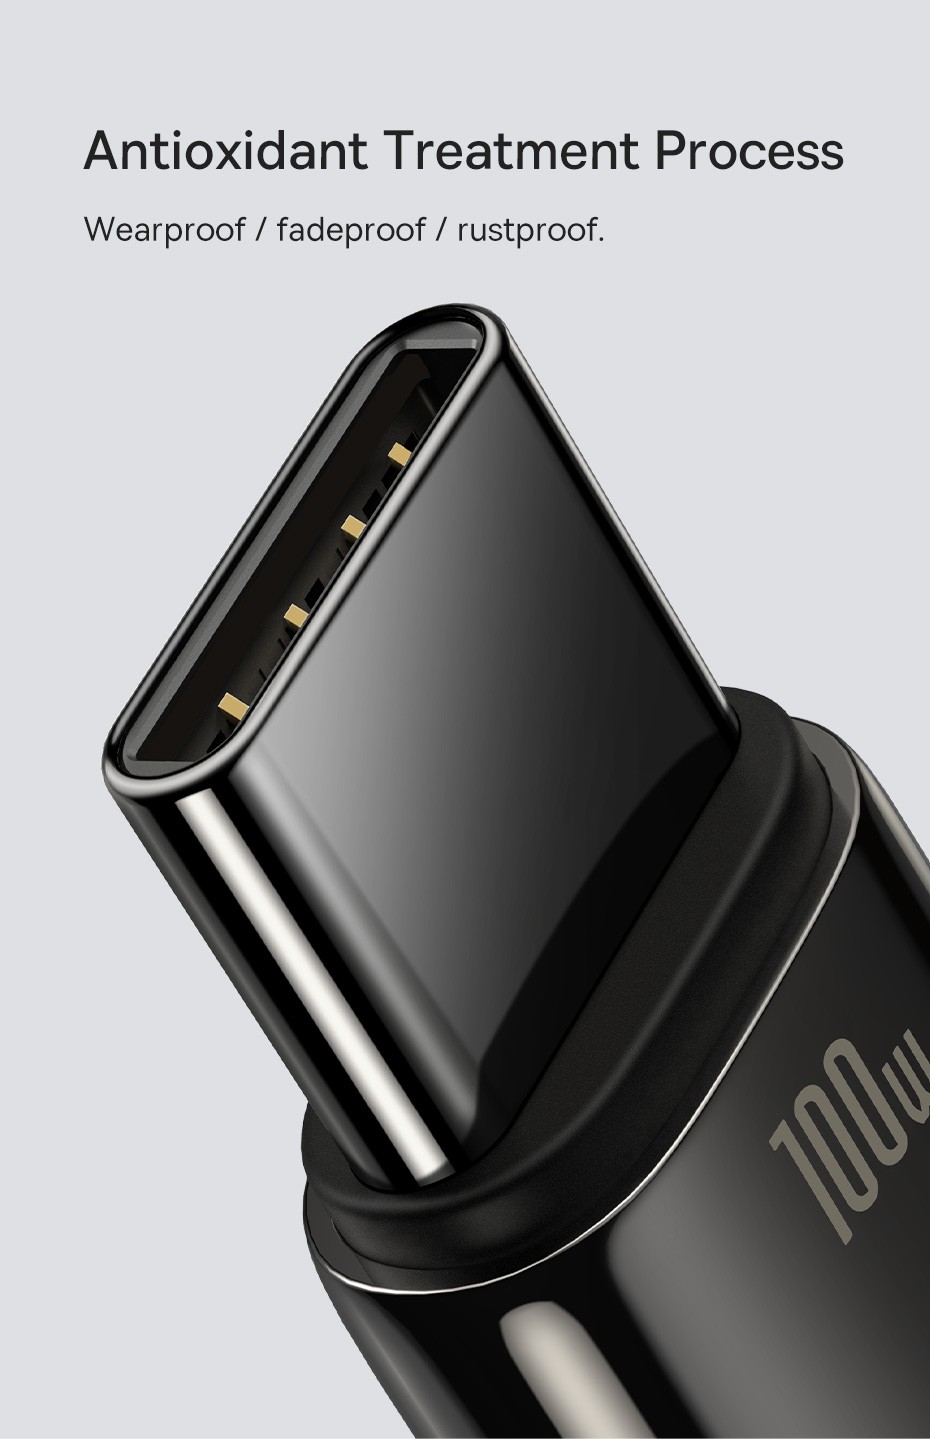 Câble USB-C De Charge Rapide 100W Charge Rapide Fil Pour Realme Huawei P30  Pro Samsung Oneplus Pheadphones F3 - Baseus